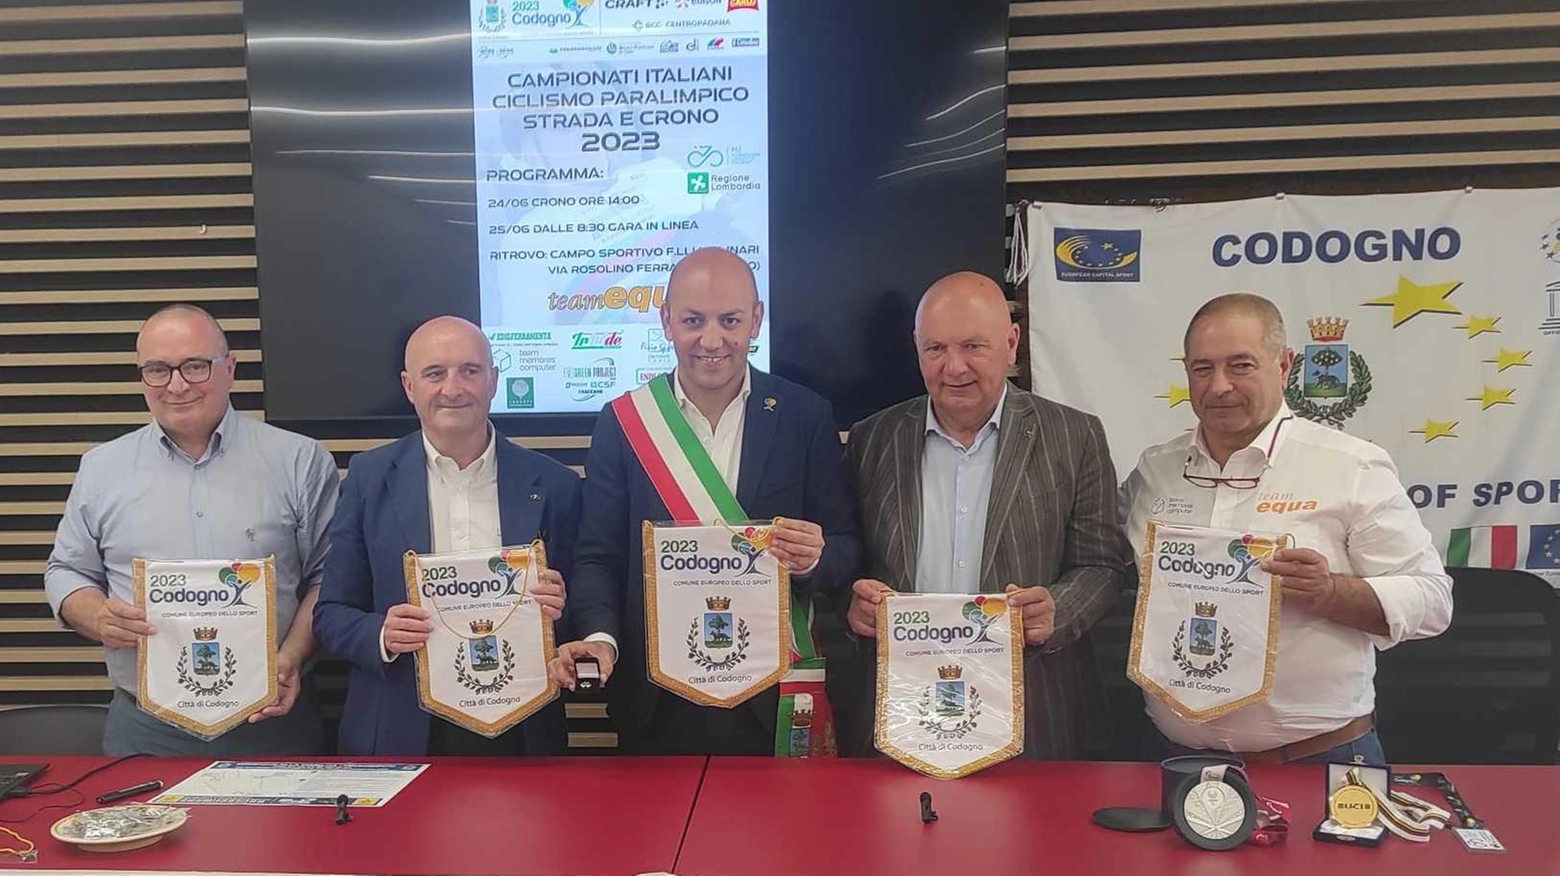 Campionati Italiani di Ciclismo Paralimpico a Codogno: 200 atleti in gara!